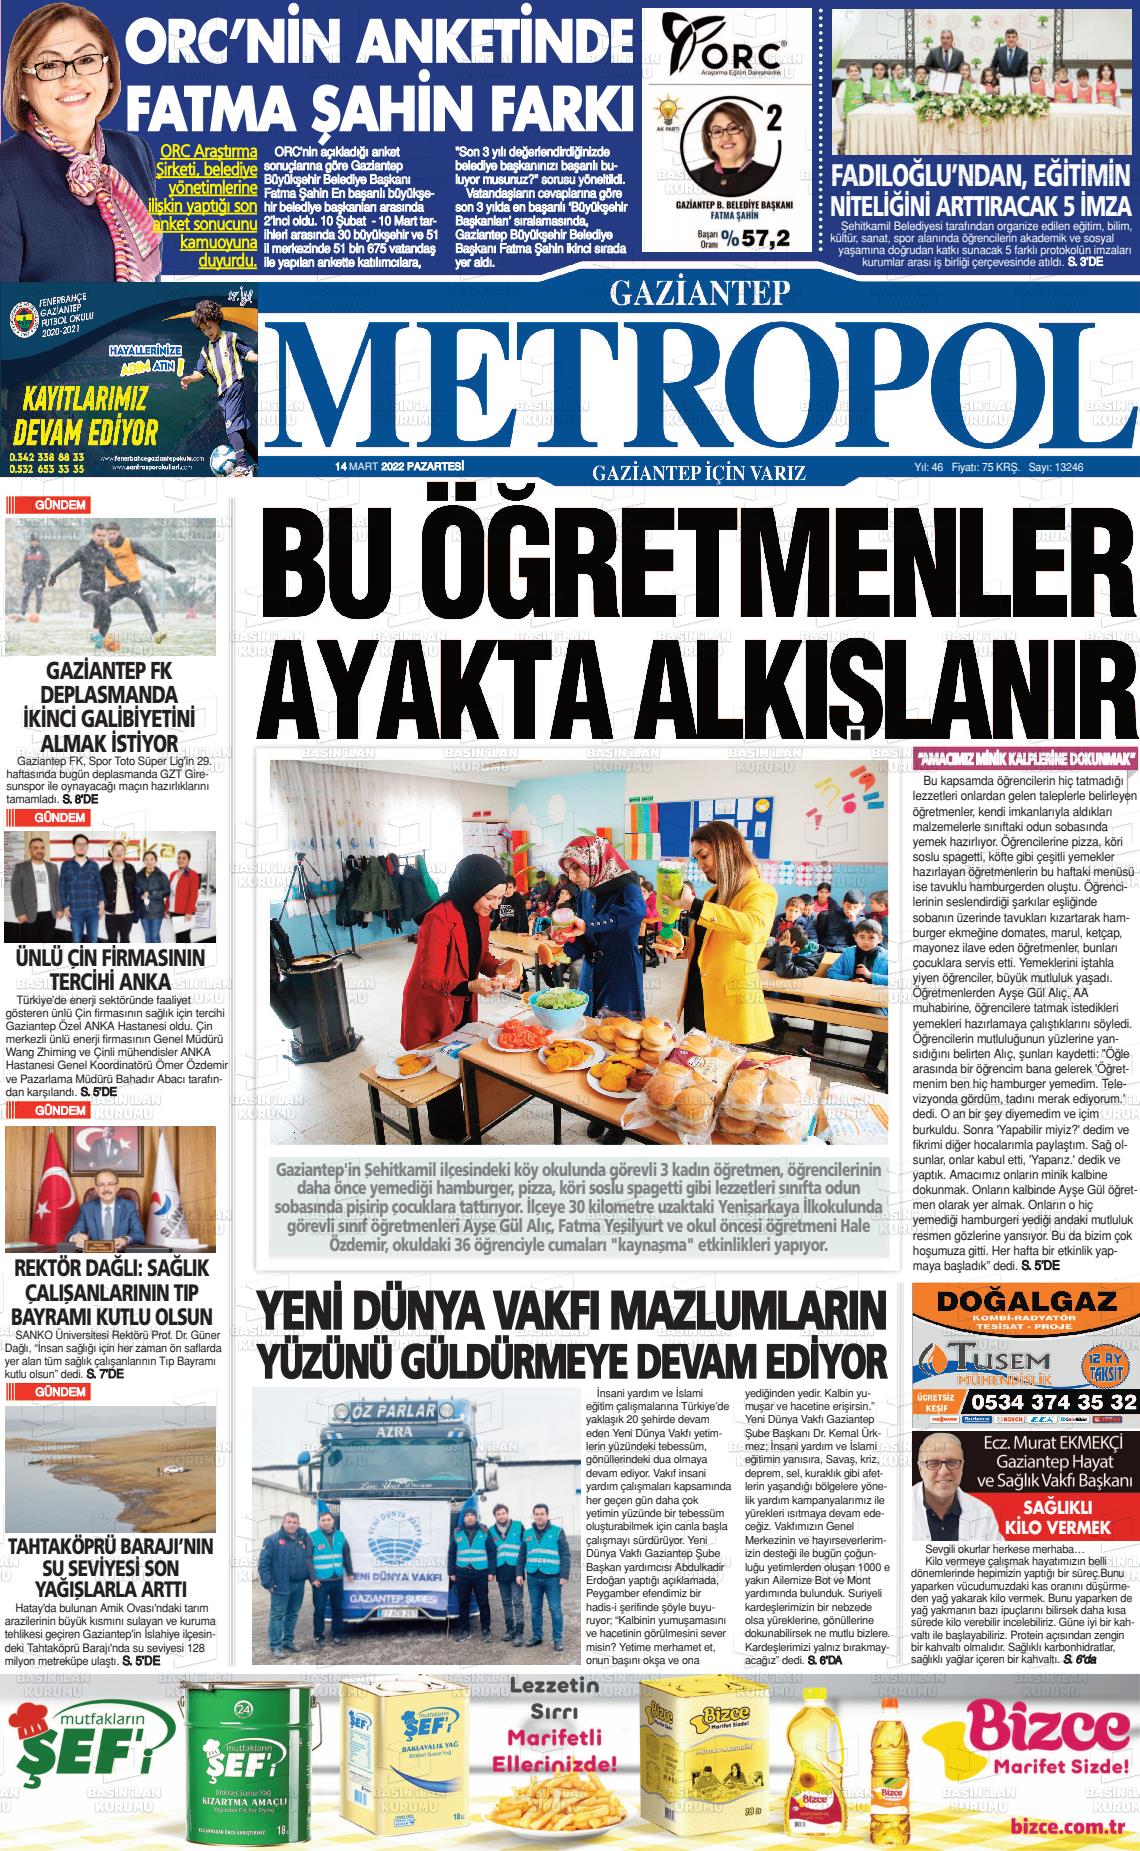 Mart Tarihli Gaziantep Metropol Gazete Man Etleri